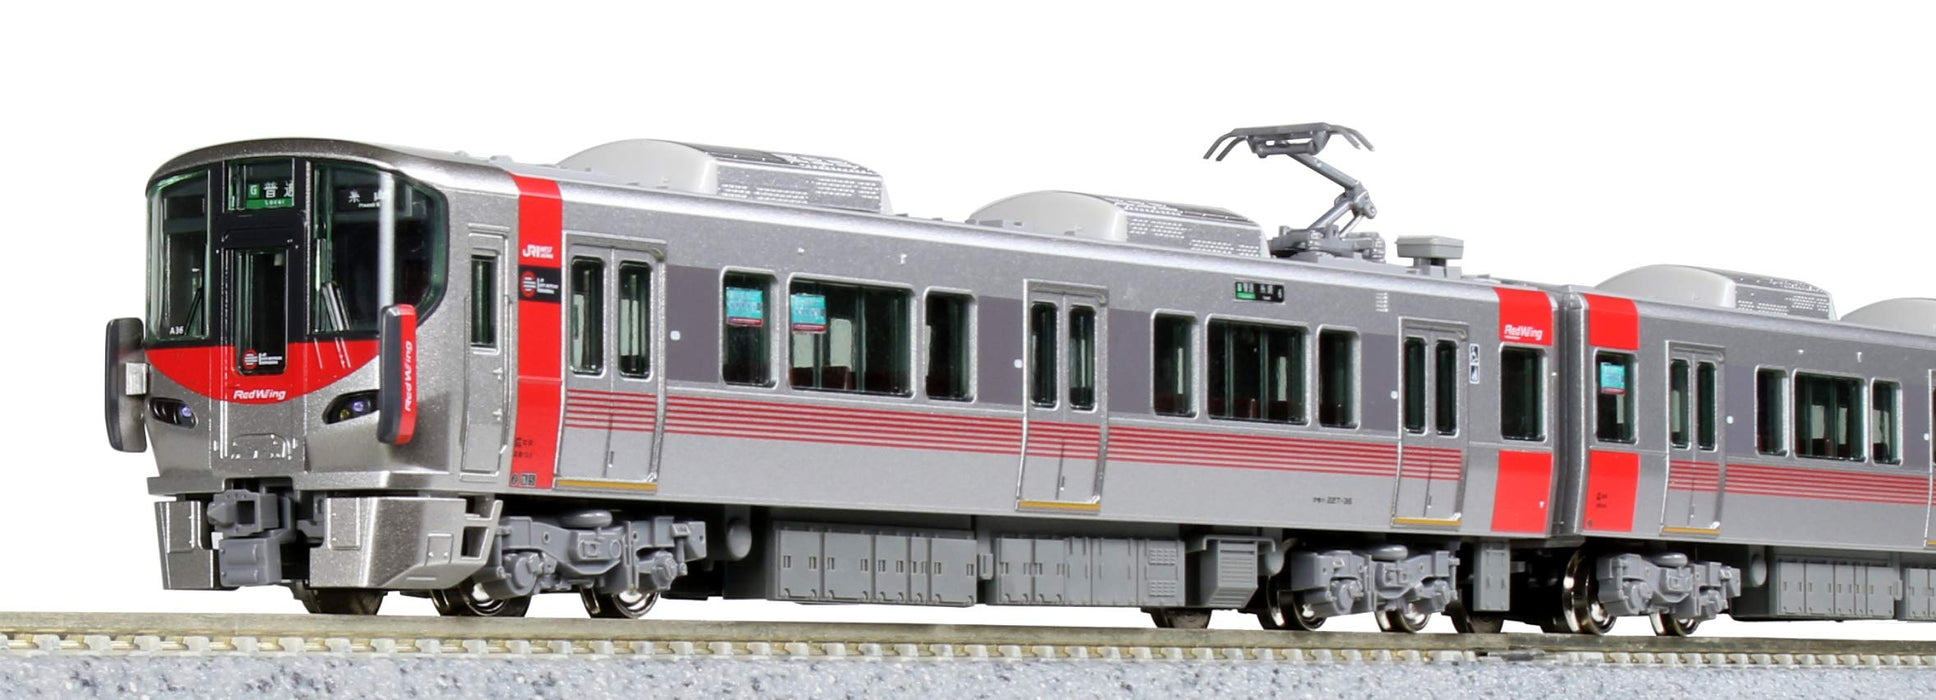 Kato N Gauge 6-Car Set 227 Série 0 Red Wing 10-1629 Modèle de train ferroviaire